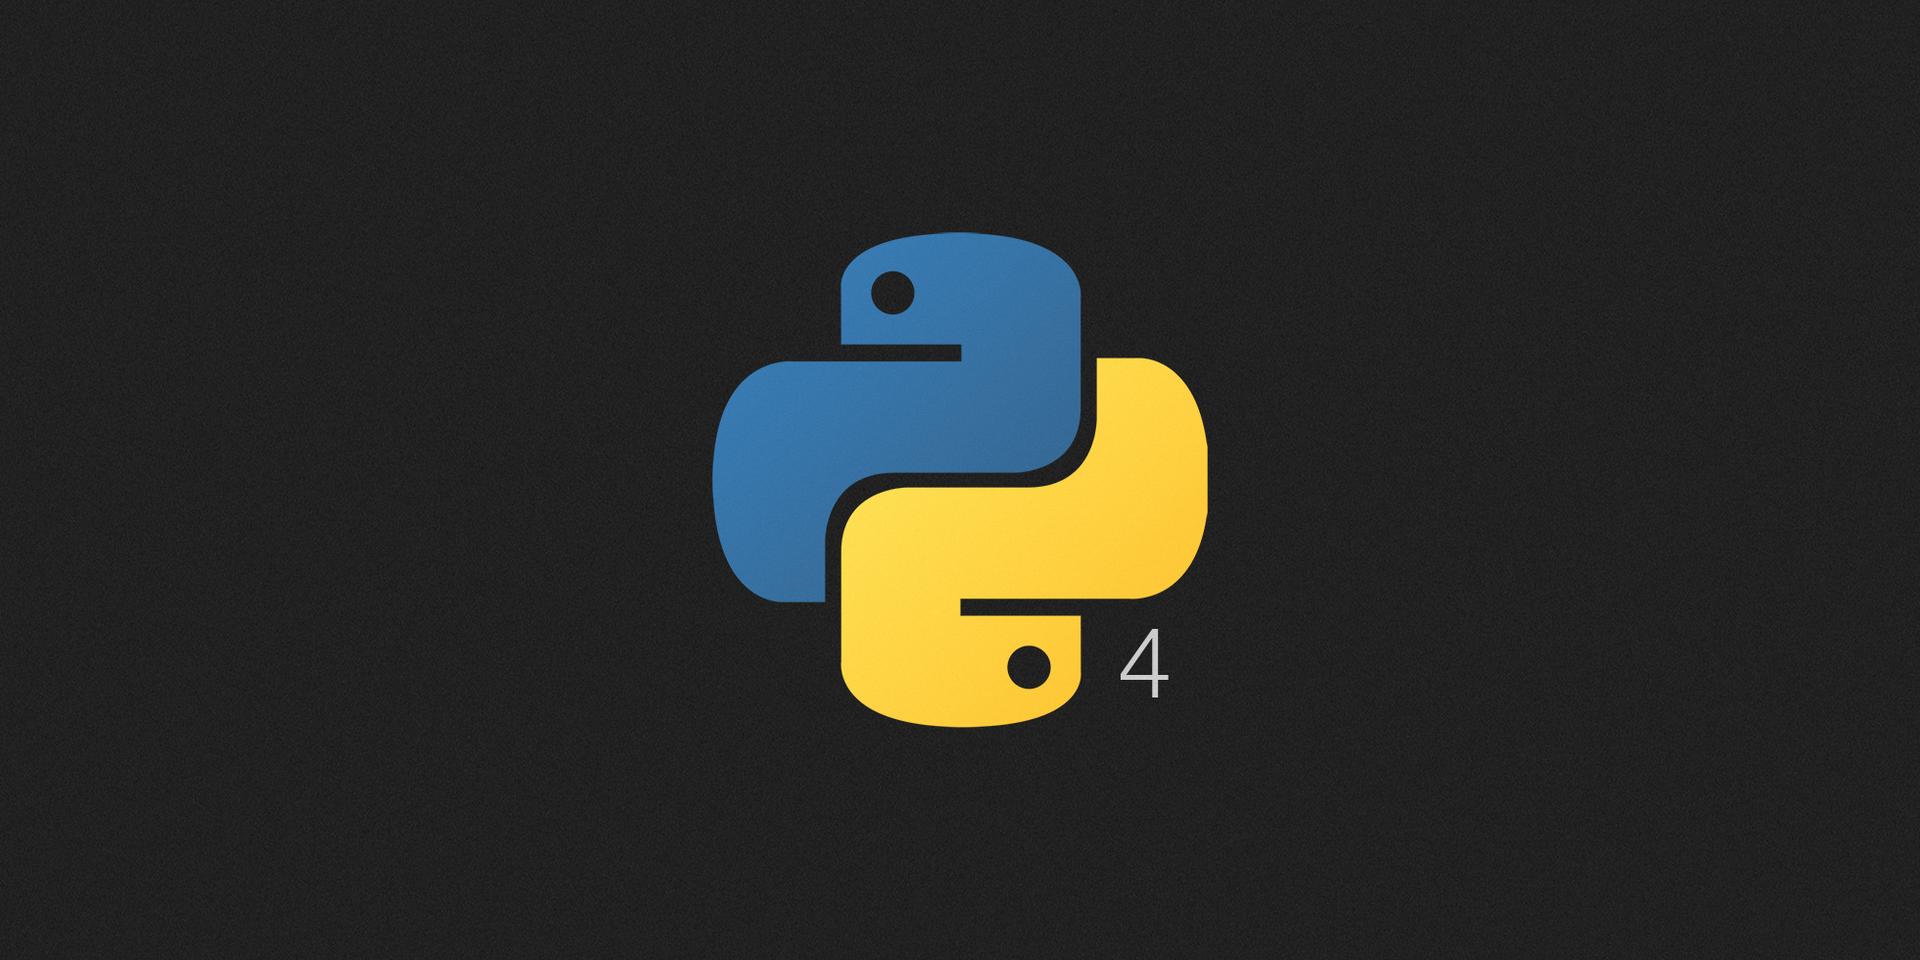  Введение в Python. Часть 4